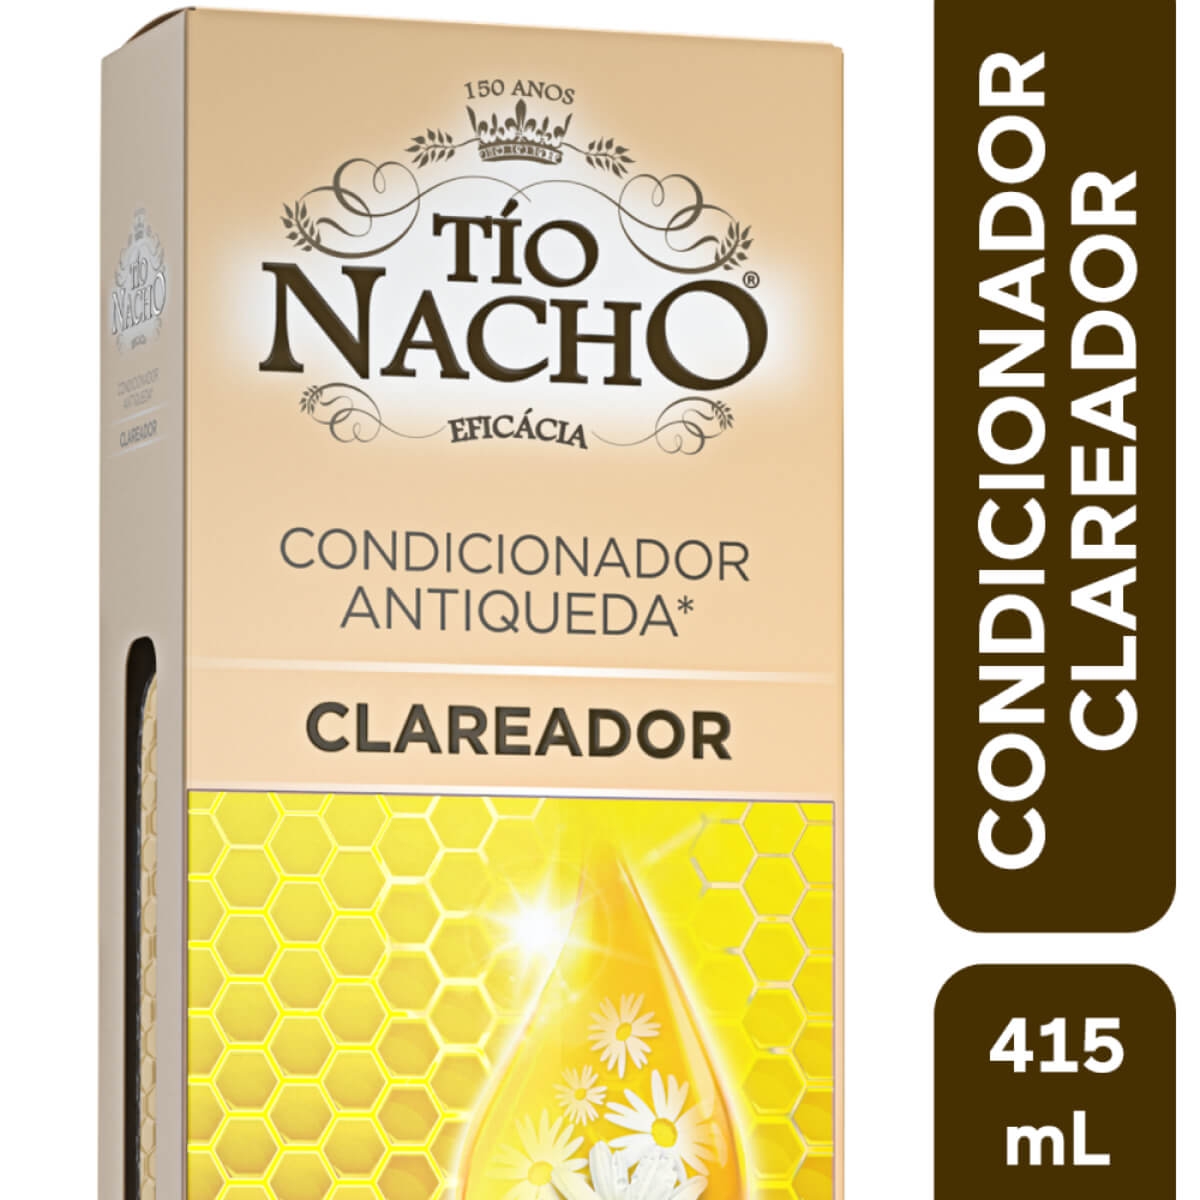 Condicionador Tio Nacho Antiqueda Clareador 415ml